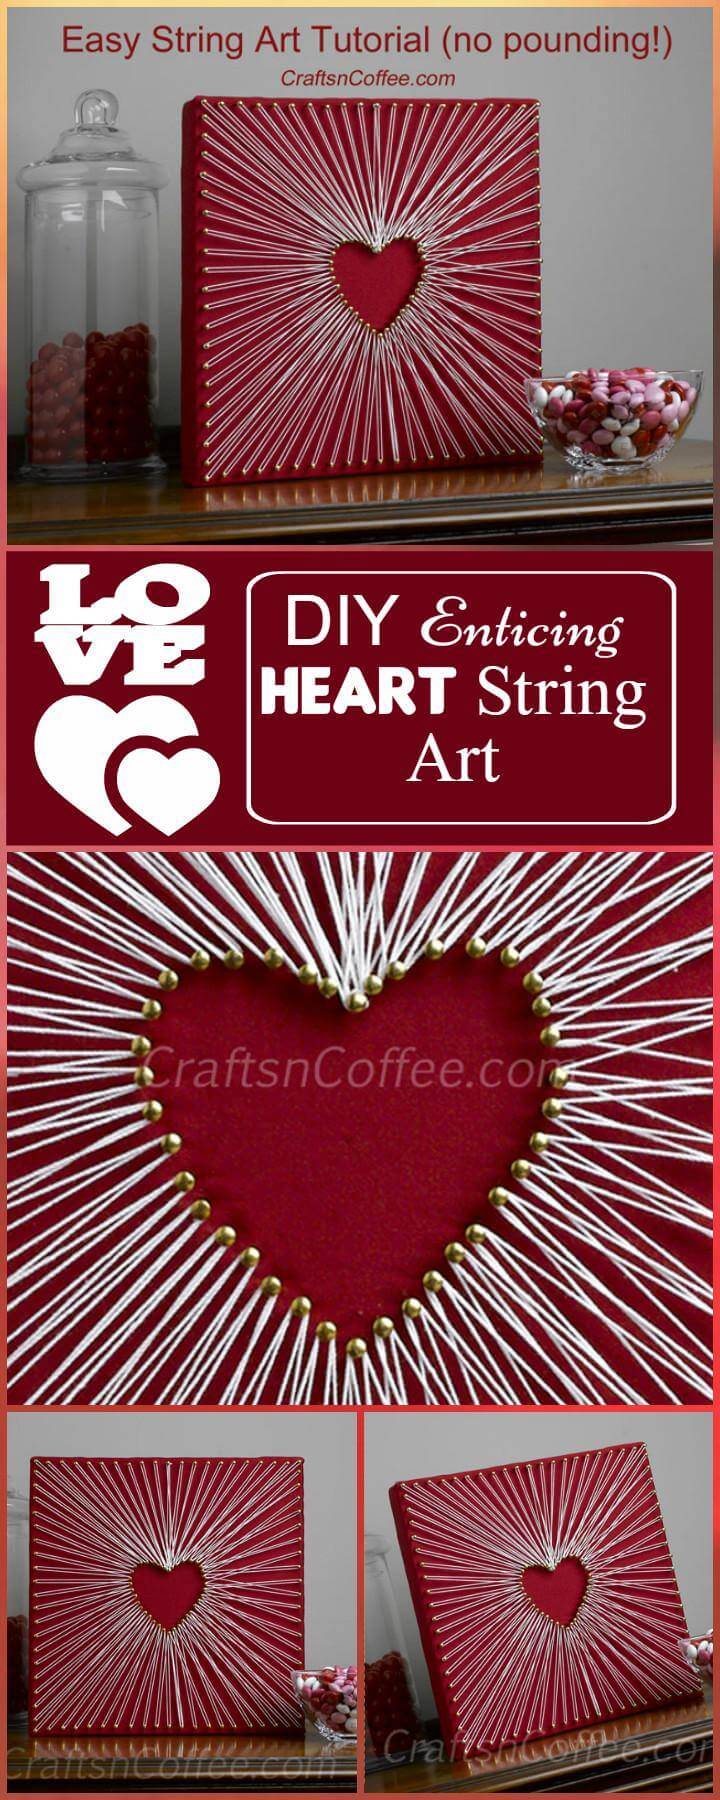 DIY Enticing Heart String Art